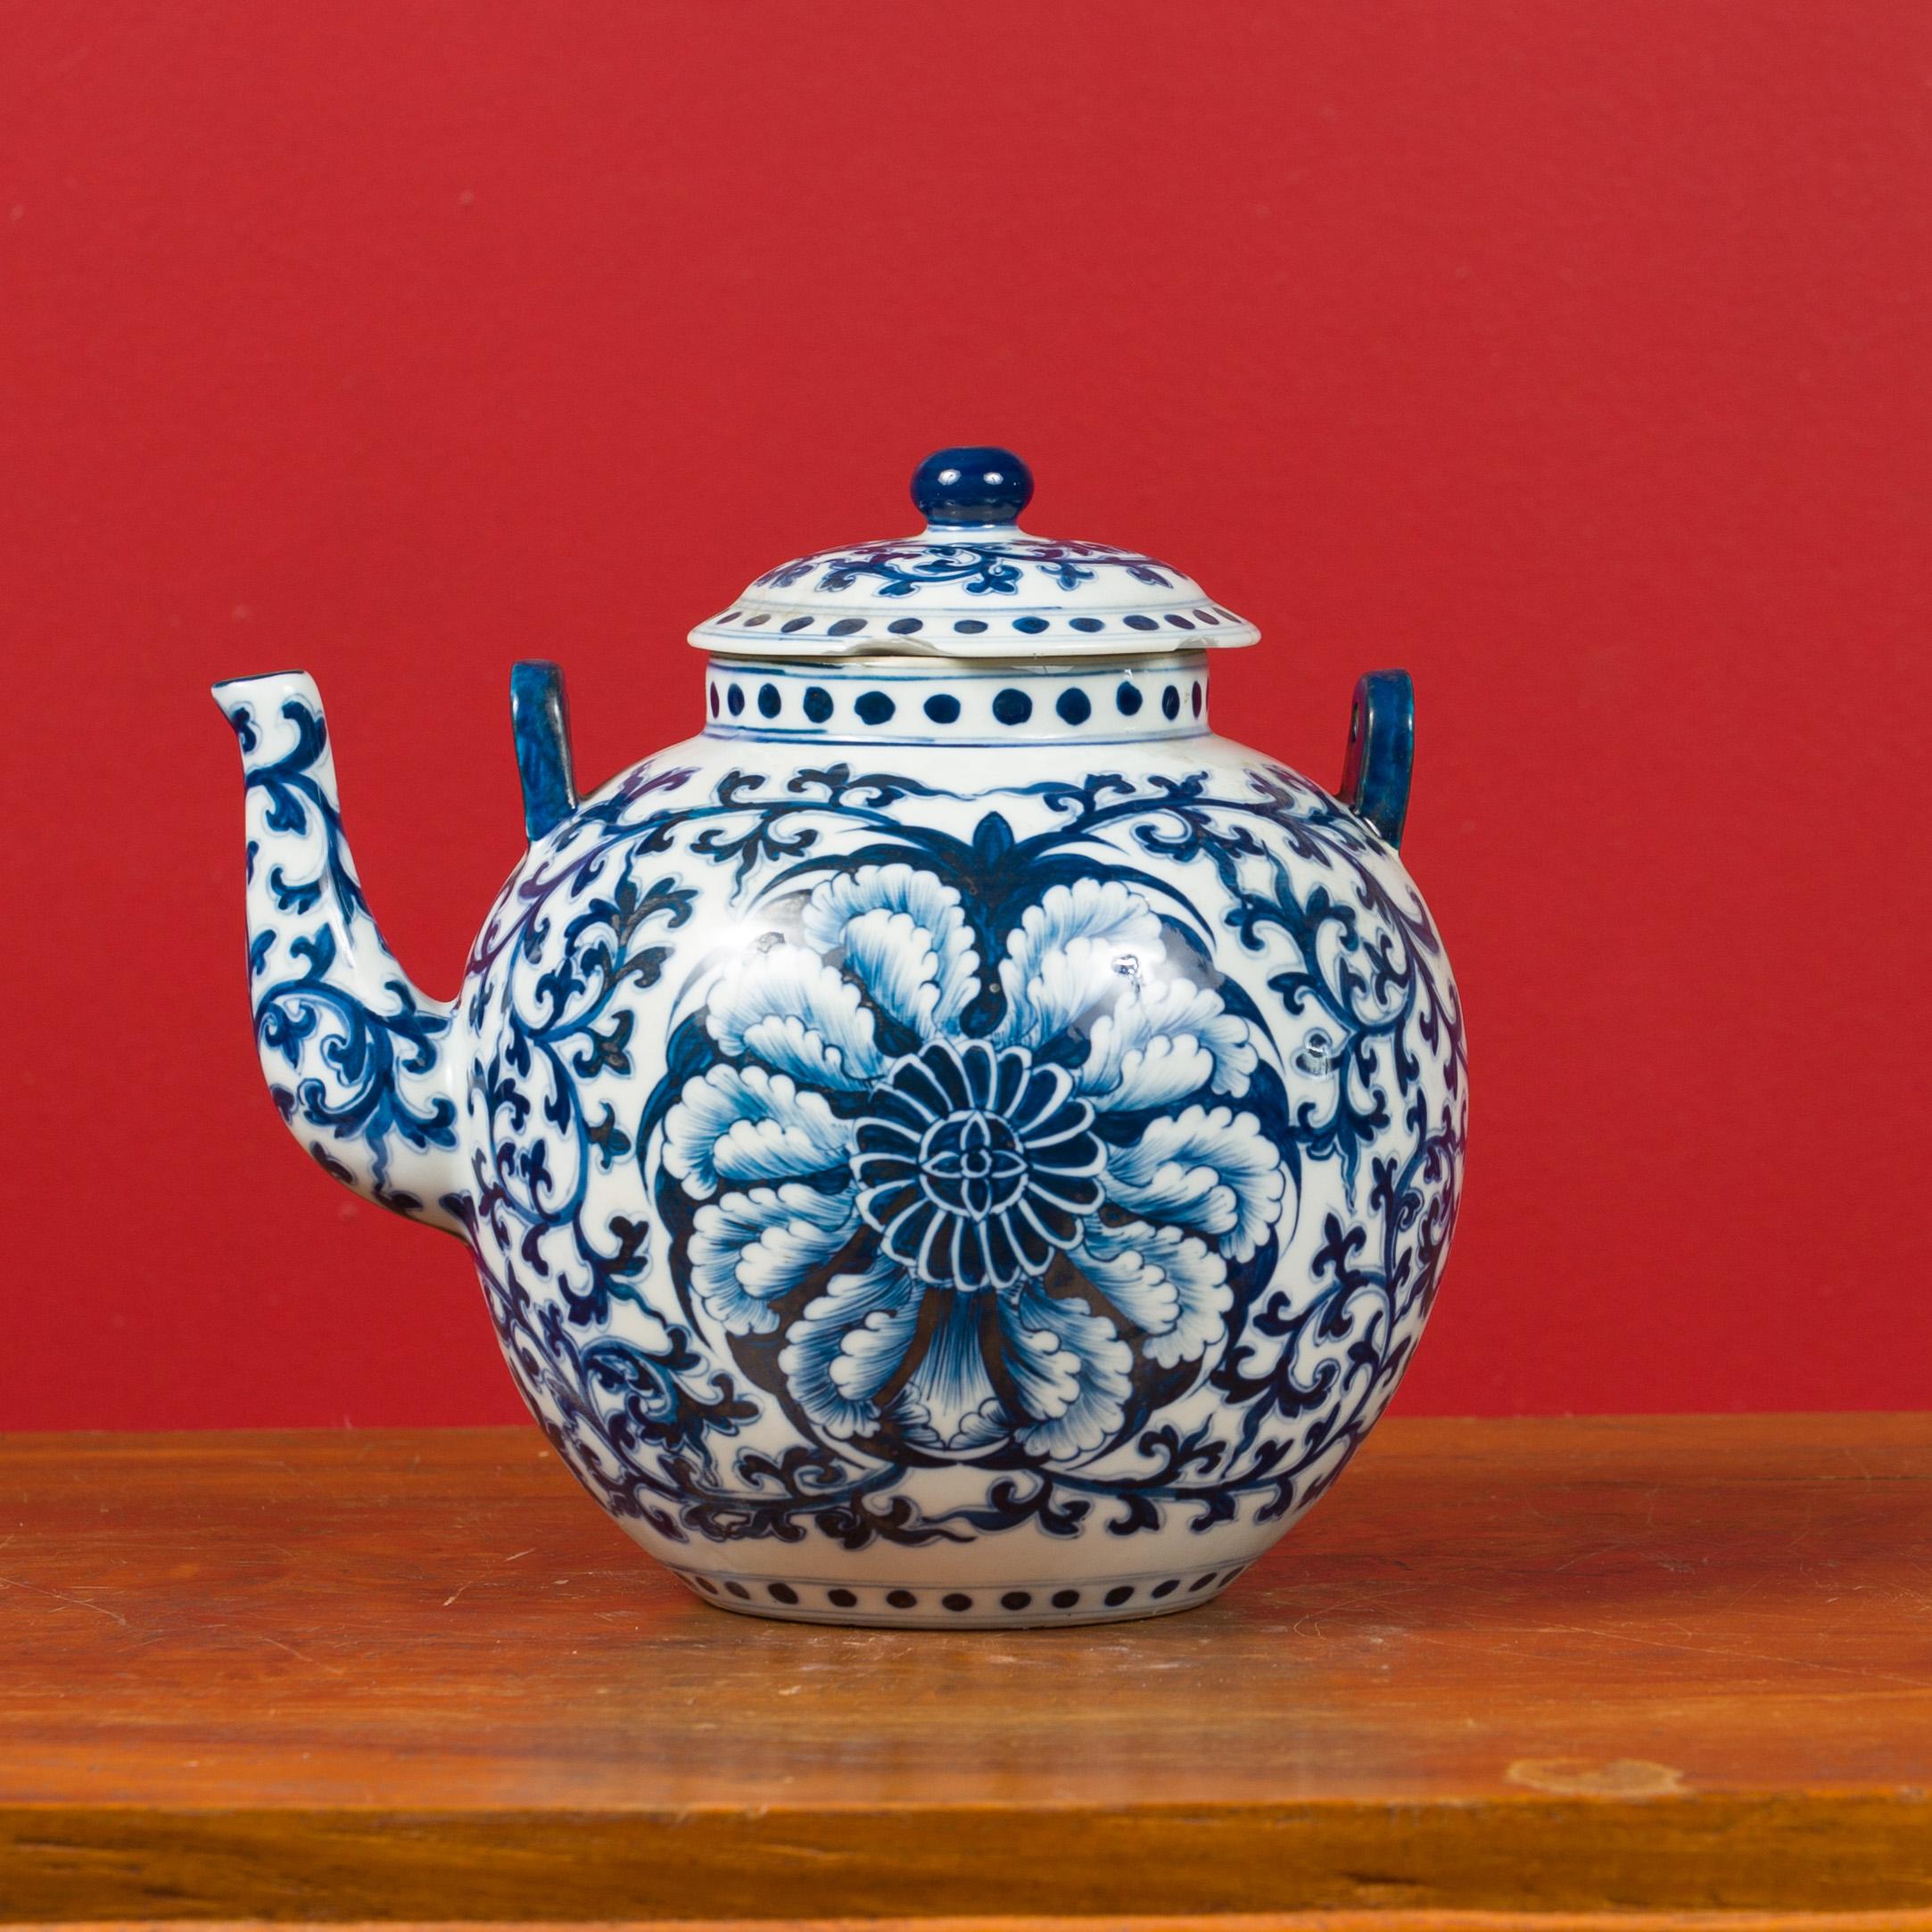 Théière chinoise vintage en porcelaine bleue et blanche du milieu du 20e siècle. Créée en Chine au milieu du siècle dernier, cette jolie théière présente un couvercle circulaire avec une petite sphère au sommet, au-dessus d'un corps rond orné d'un